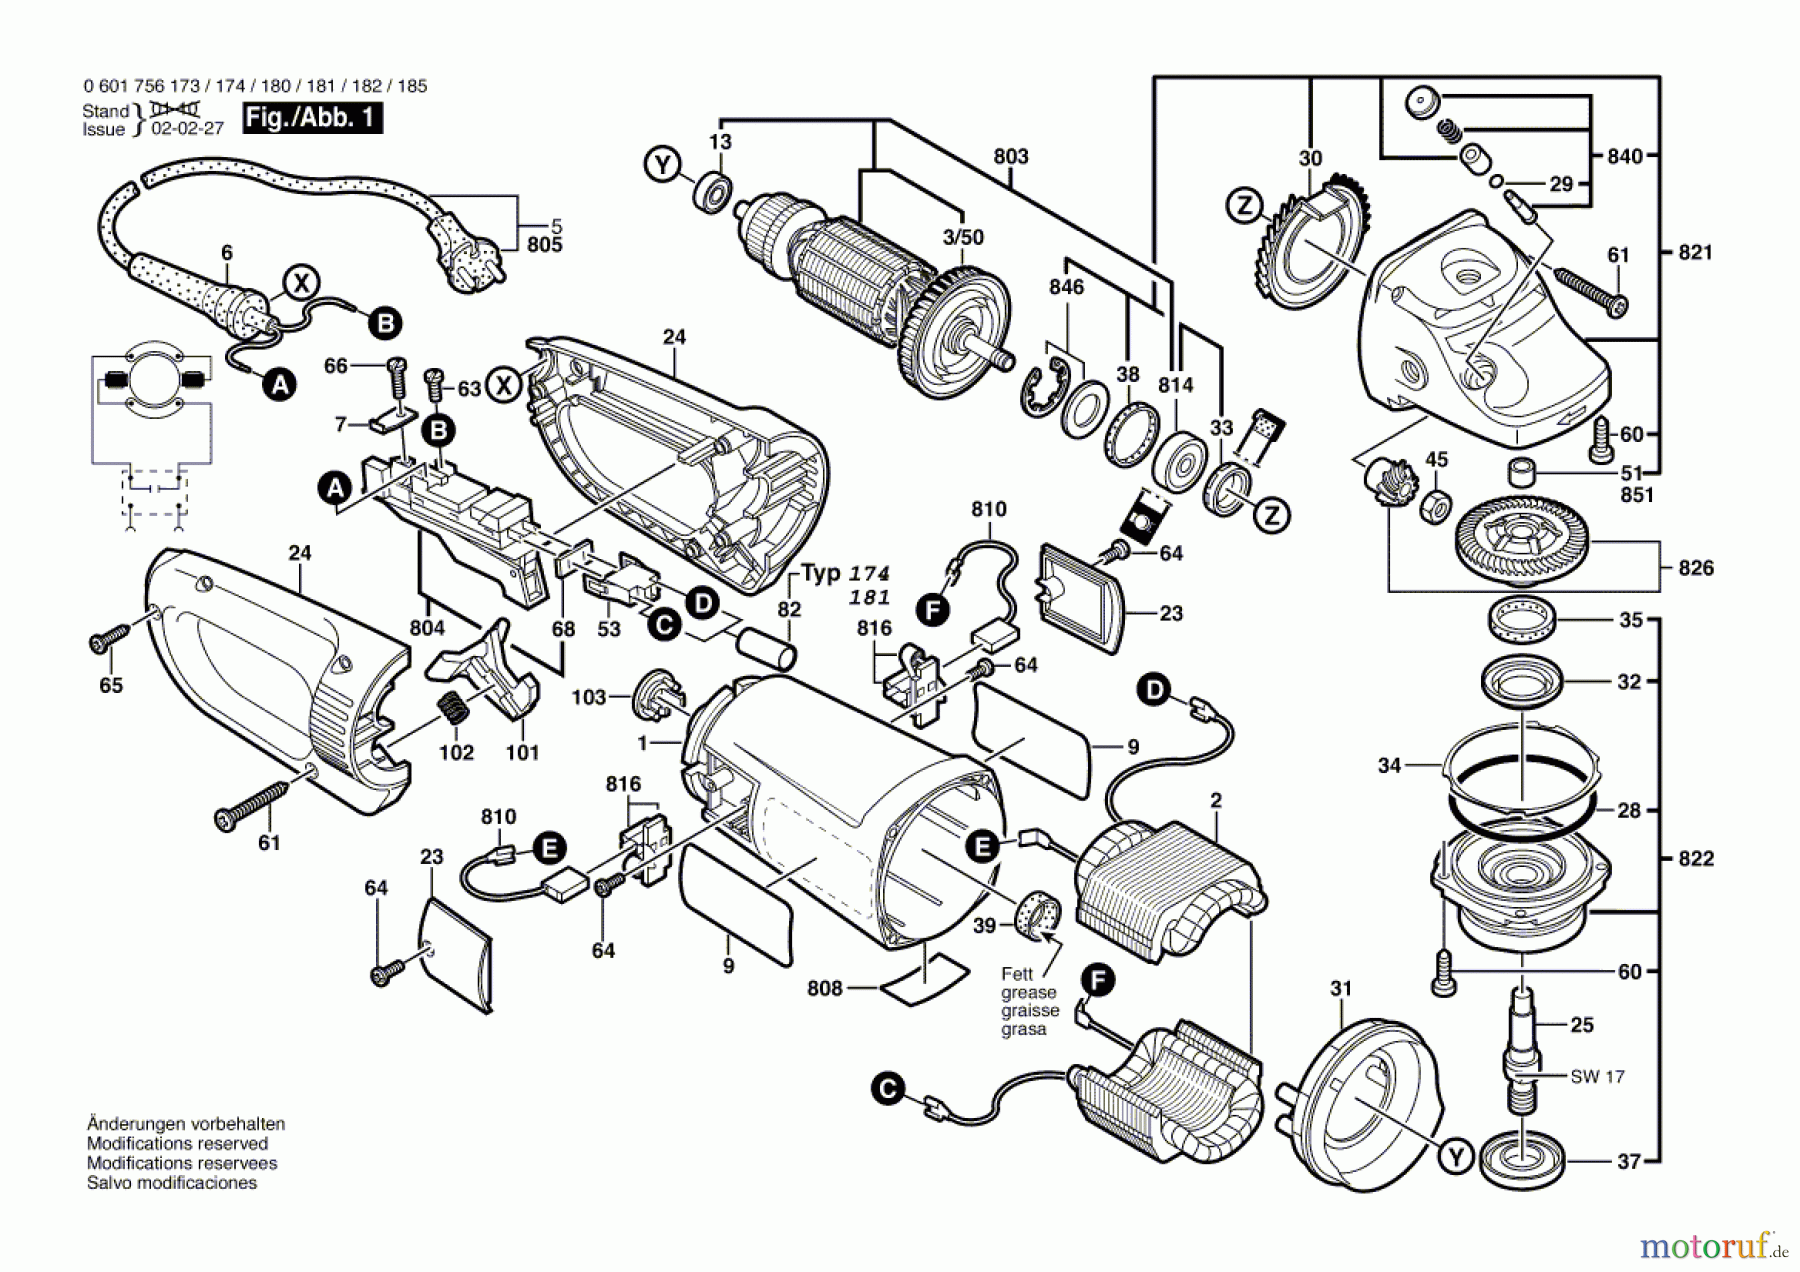  Bosch Werkzeug Winkelschleifer GWS 25-230 Seite 1